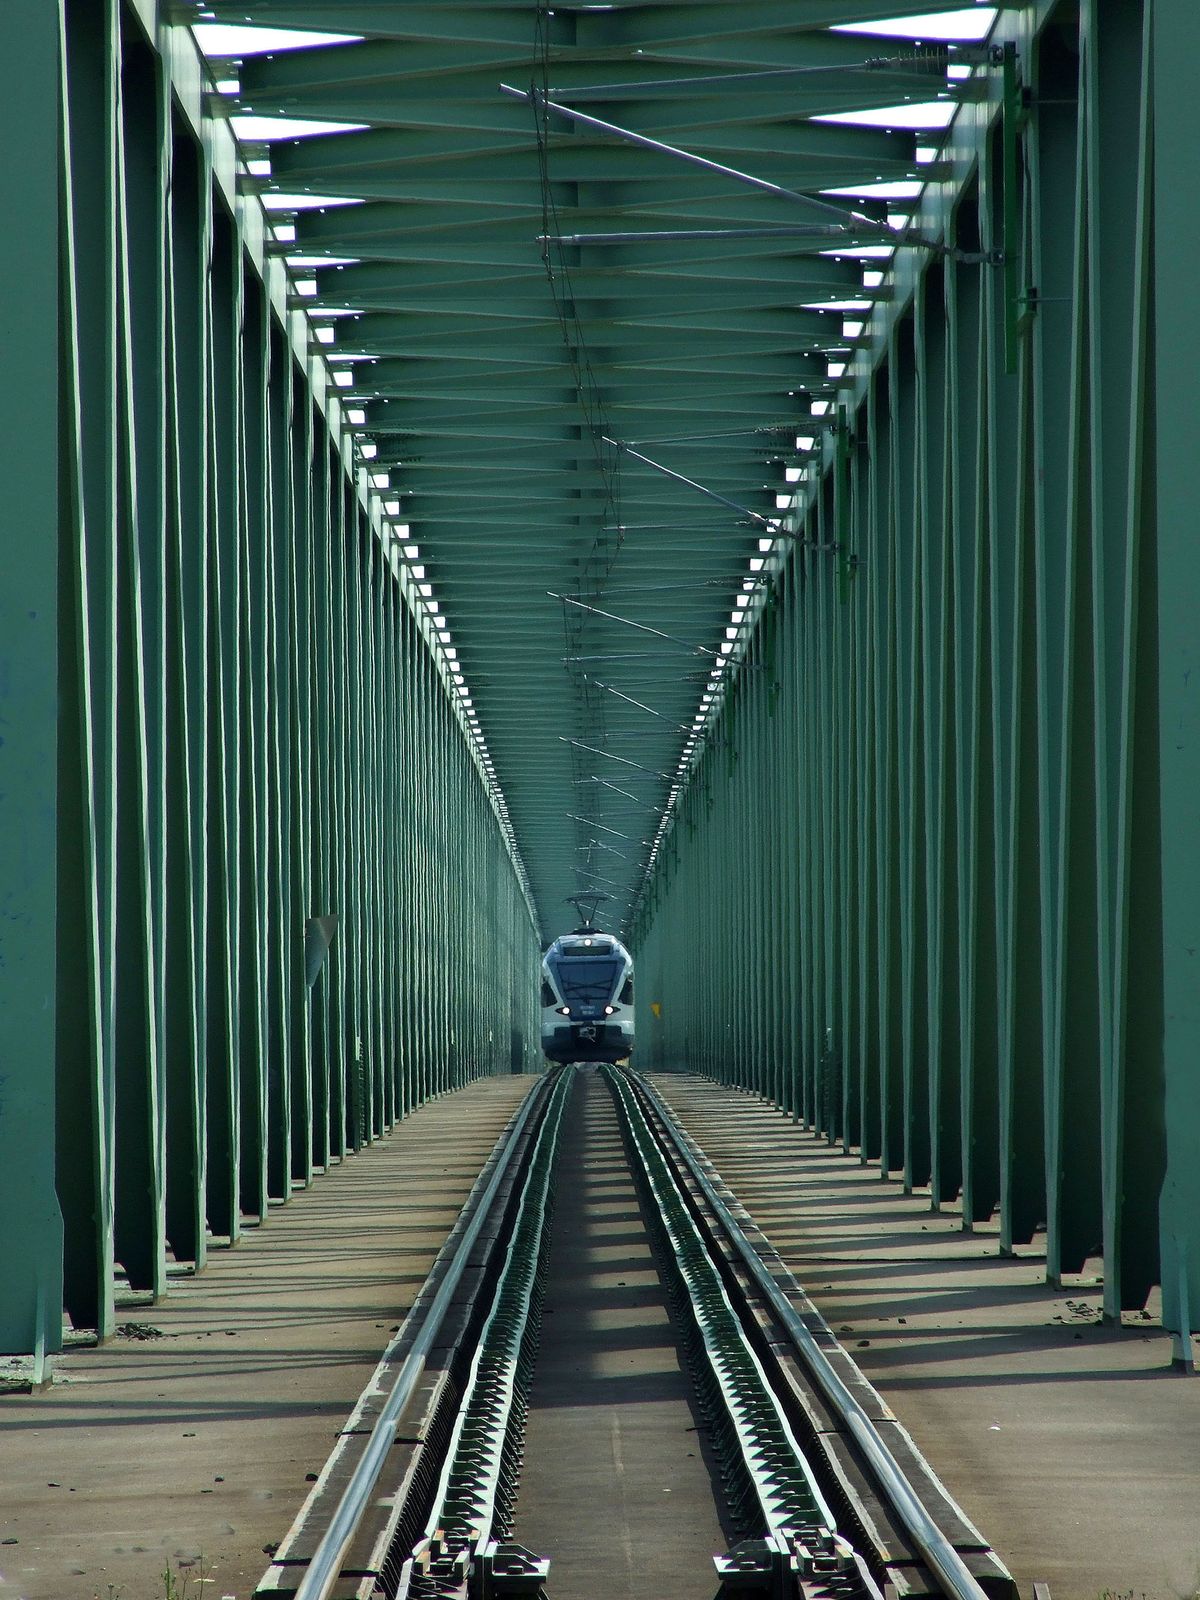 A MÁV Csoport egyik modern Stadler Flirt elektromos meghajtású vonata Esztergom felé tart az Újpesti vasúti hídon át a nemrég felújított és villamosított pályáján.
MTVA/Bizományosi: Jászai Csaba 
***************************
Kedves Felhasználó!
Ez a fotó nem a Duna Médiaszolgáltató Zrt./MTI által készített és kiadott fényképfelvétel, így harmadik személy által támasztott bárminemű – különösen szerzői jogi, szomszédos jogi és személyiségi jogi – igényért a fotó szerzője/jogutódja közvetlenül maga áll helyt, az MTVA felelőssége e körben kizárt.